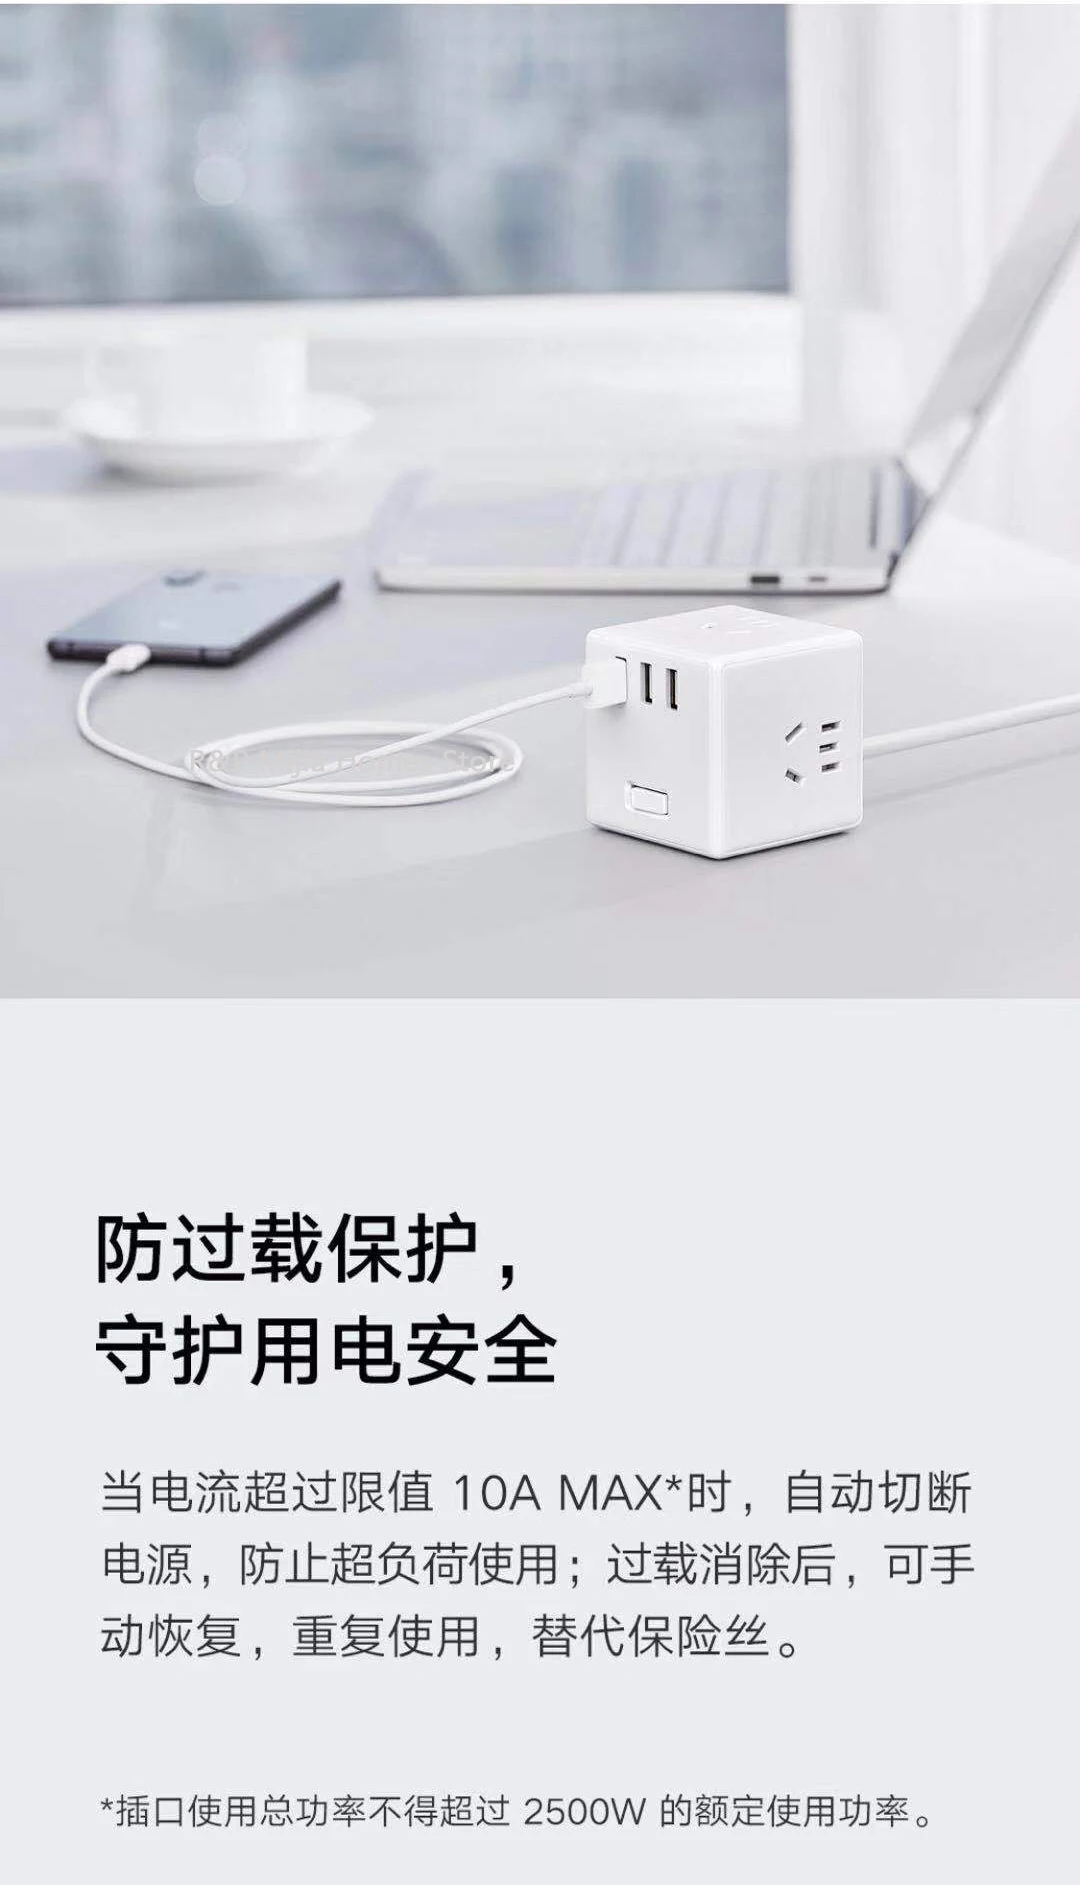 Xiaomi Mijia Rubik куб конвертер квадратный дизайн три usb-порта для зарядки компактная Удобная защита безопасности